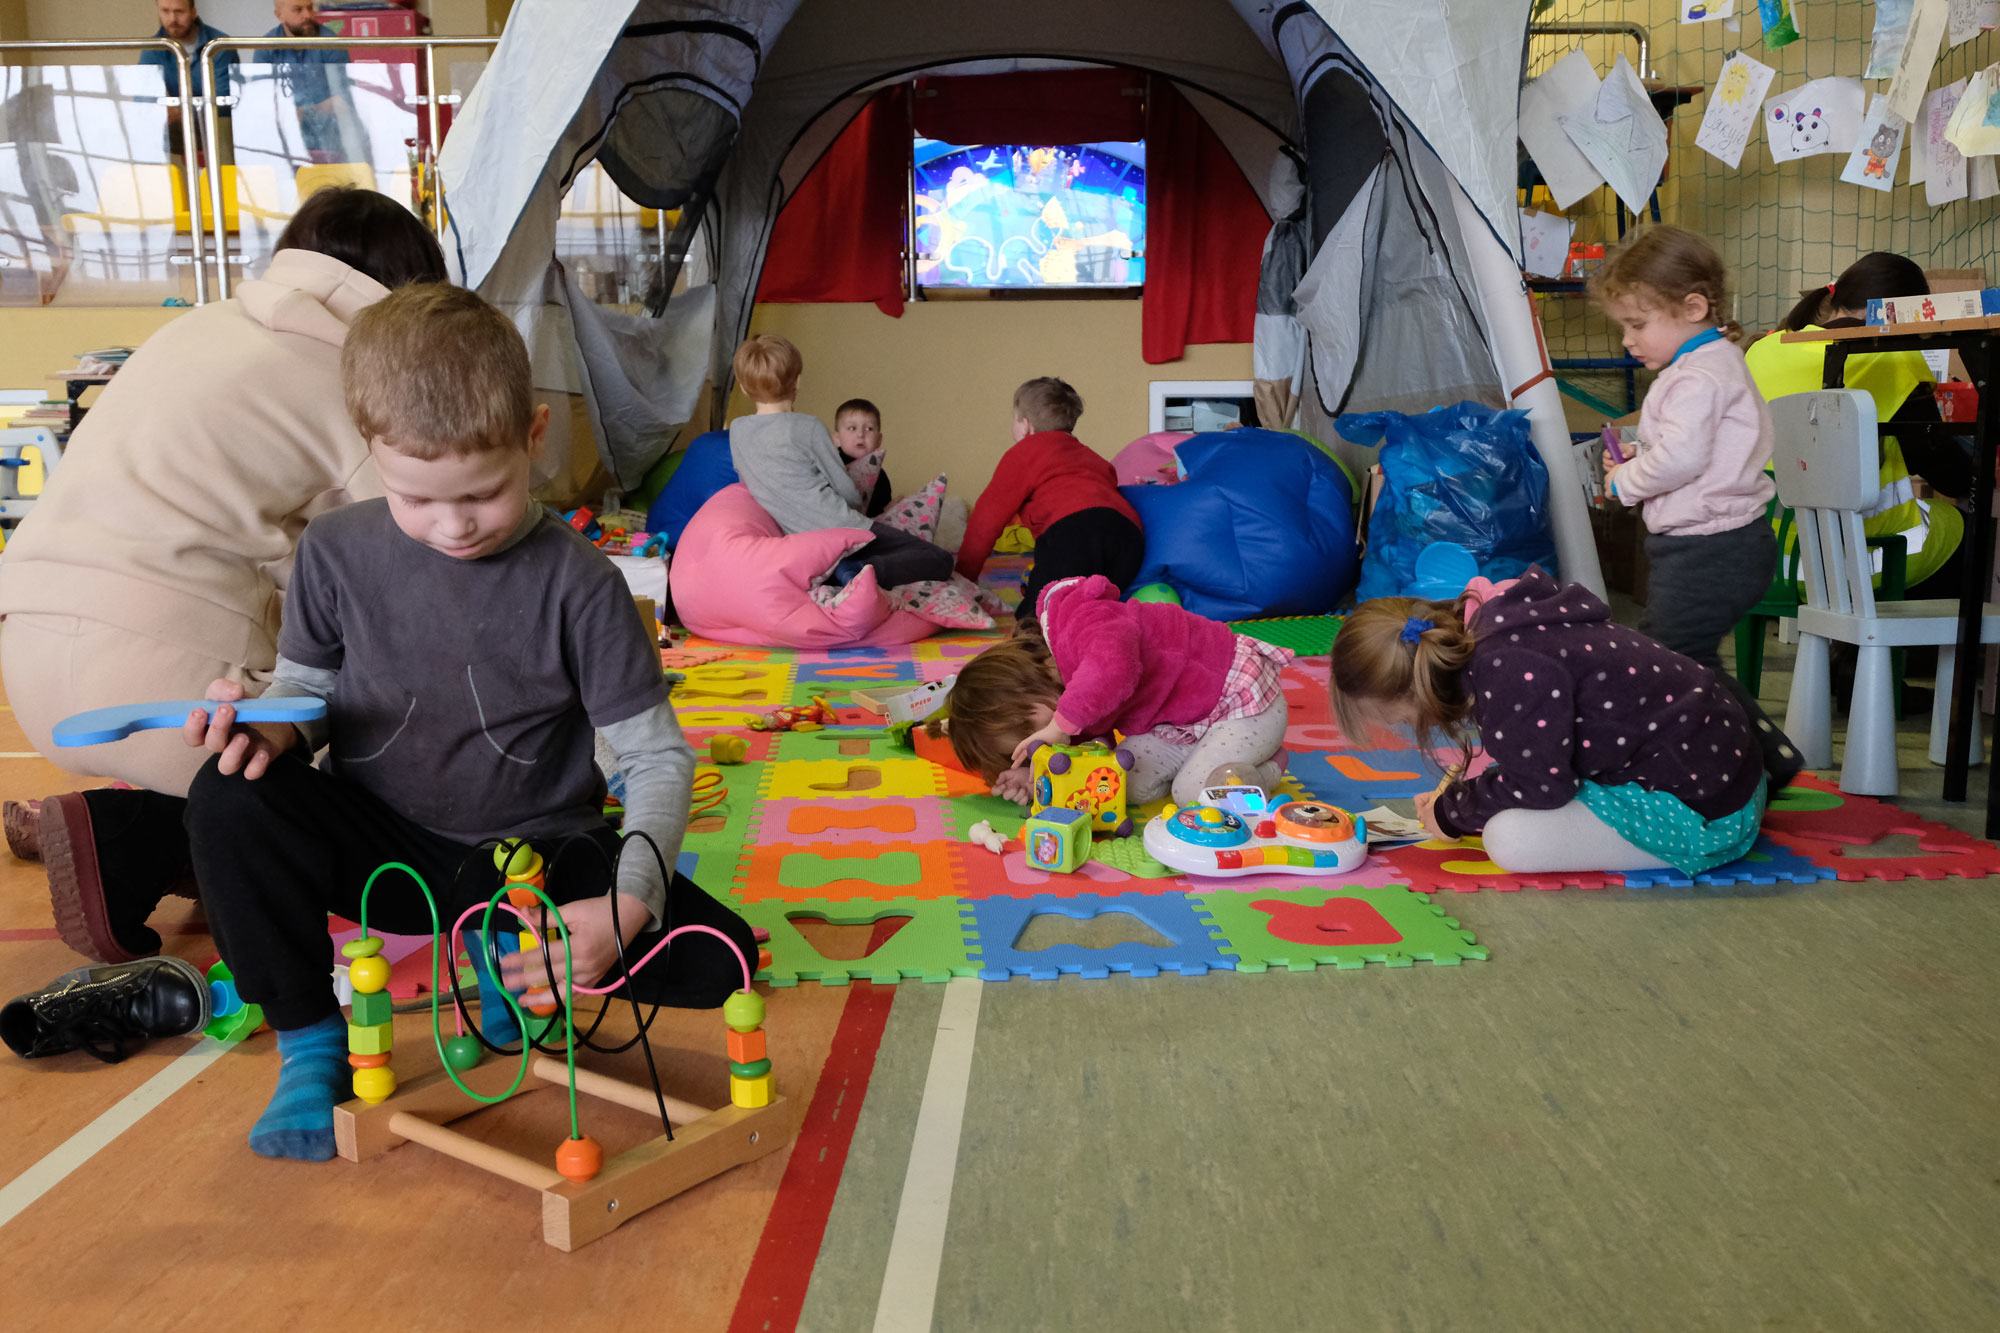 الأطفال يتعلمون ويلعبون في ركن من صالة ألعاب رياضية مدرسية أقيمت لاستضافة العائلات اللاجئة التي فرت من الحرب في أوكرانيا.